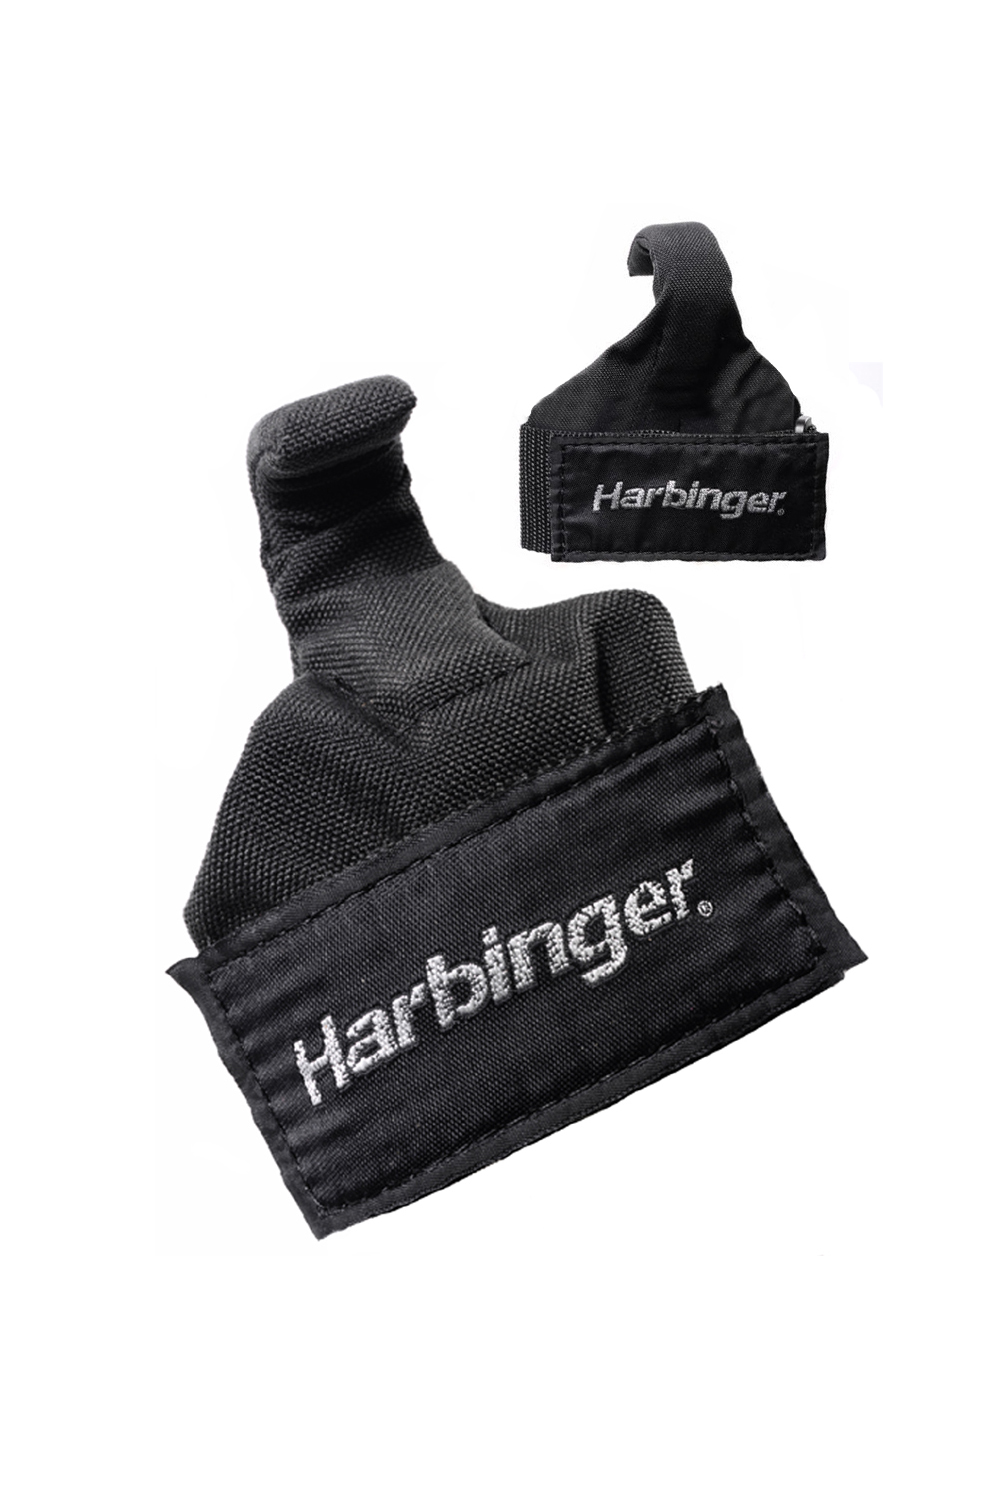 Harbinger Fitness Harbinger Lifting hook